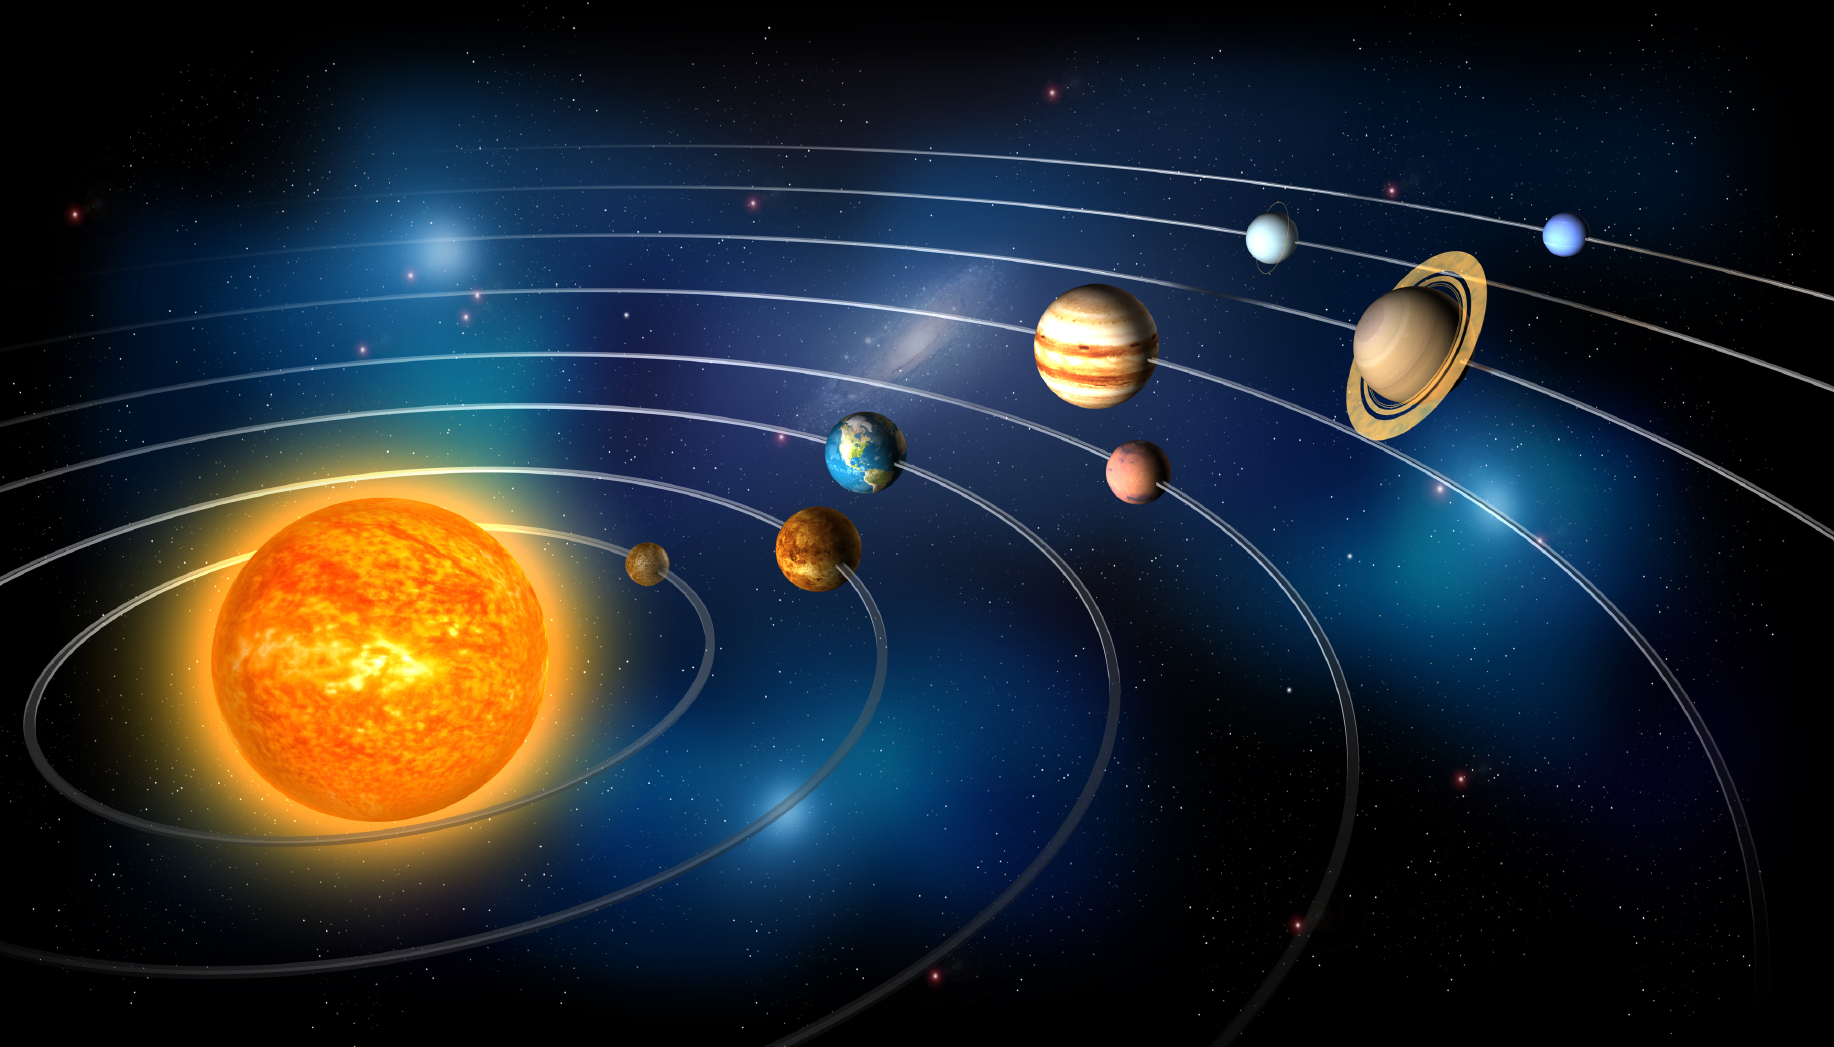 Solar System Diagram Solar System Diagram Without Pluto Wiring Diagram Shw